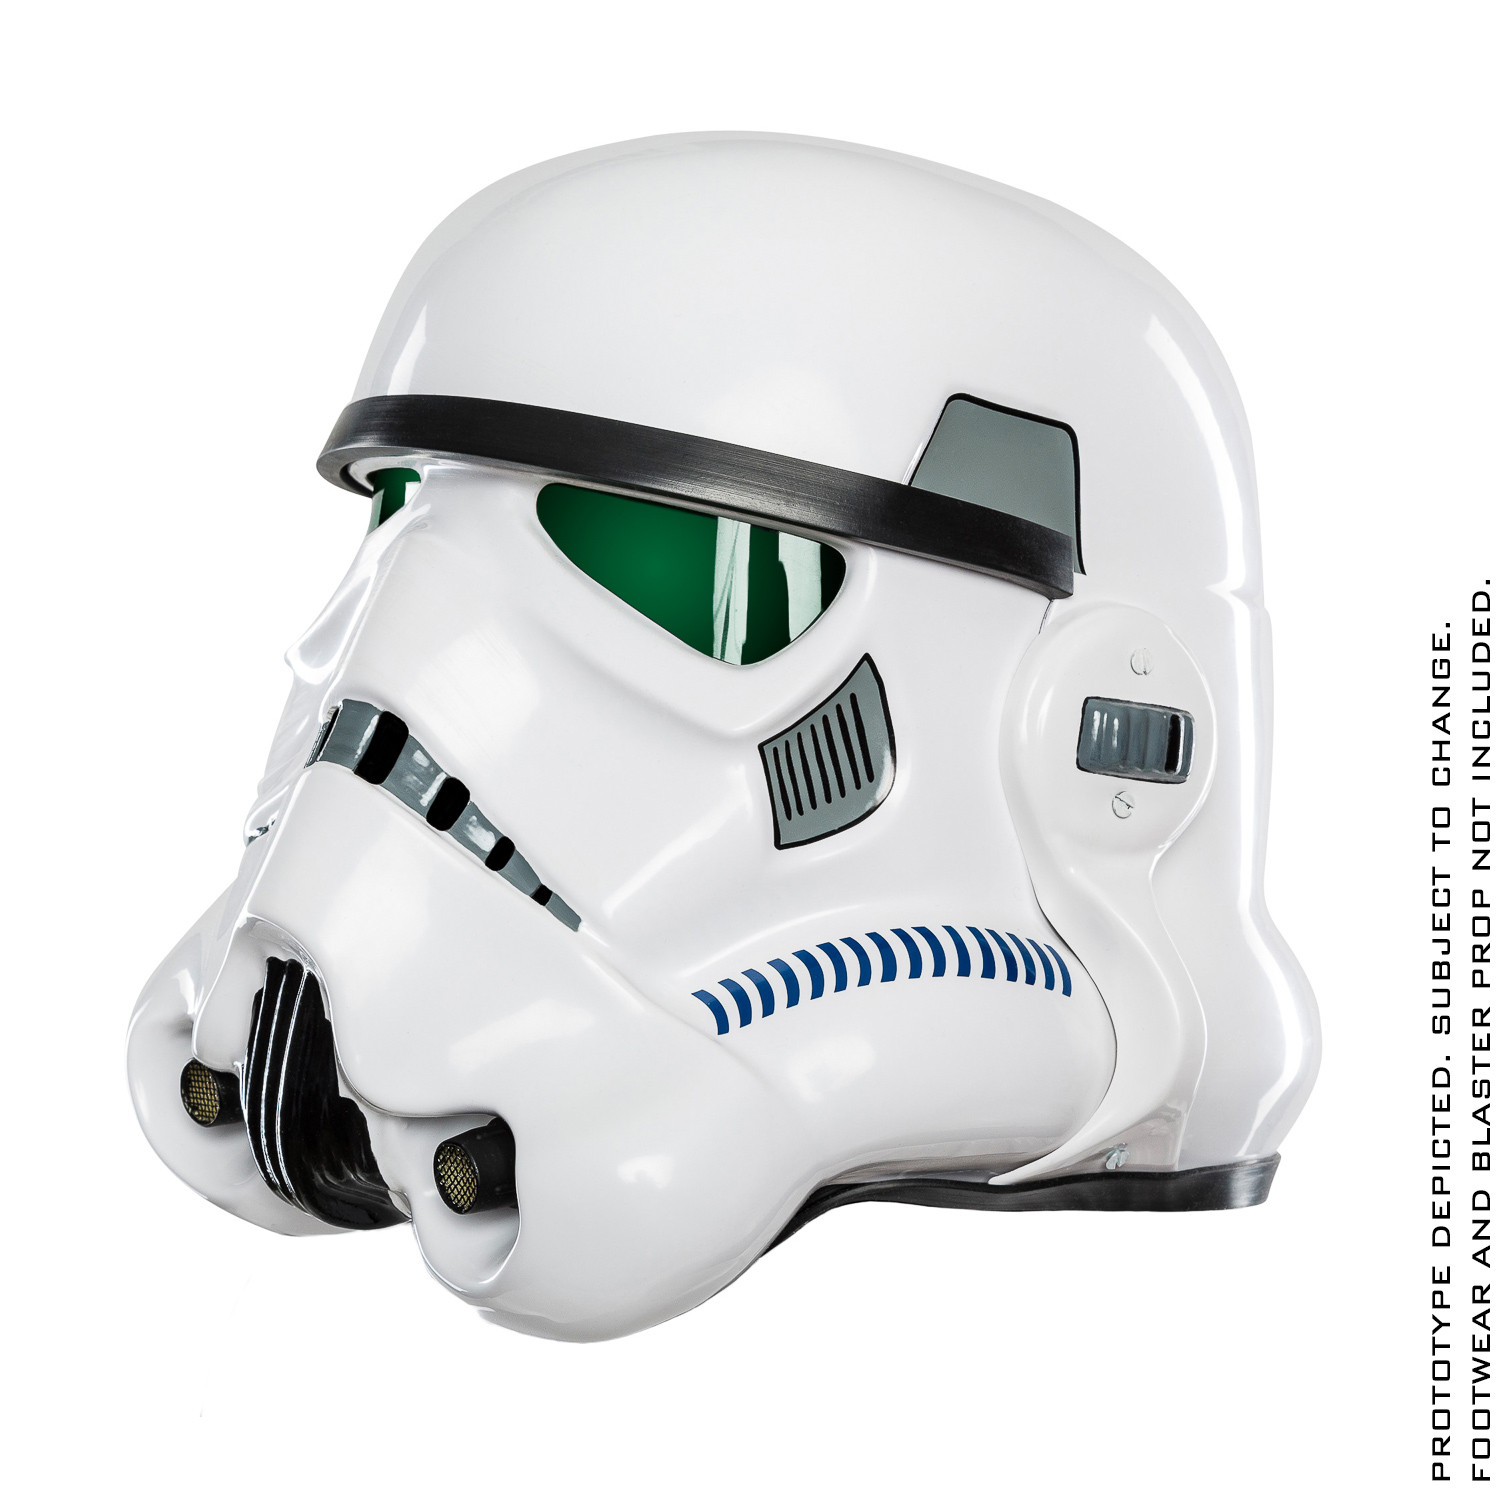 star wars imperial navy trooper helmet prop